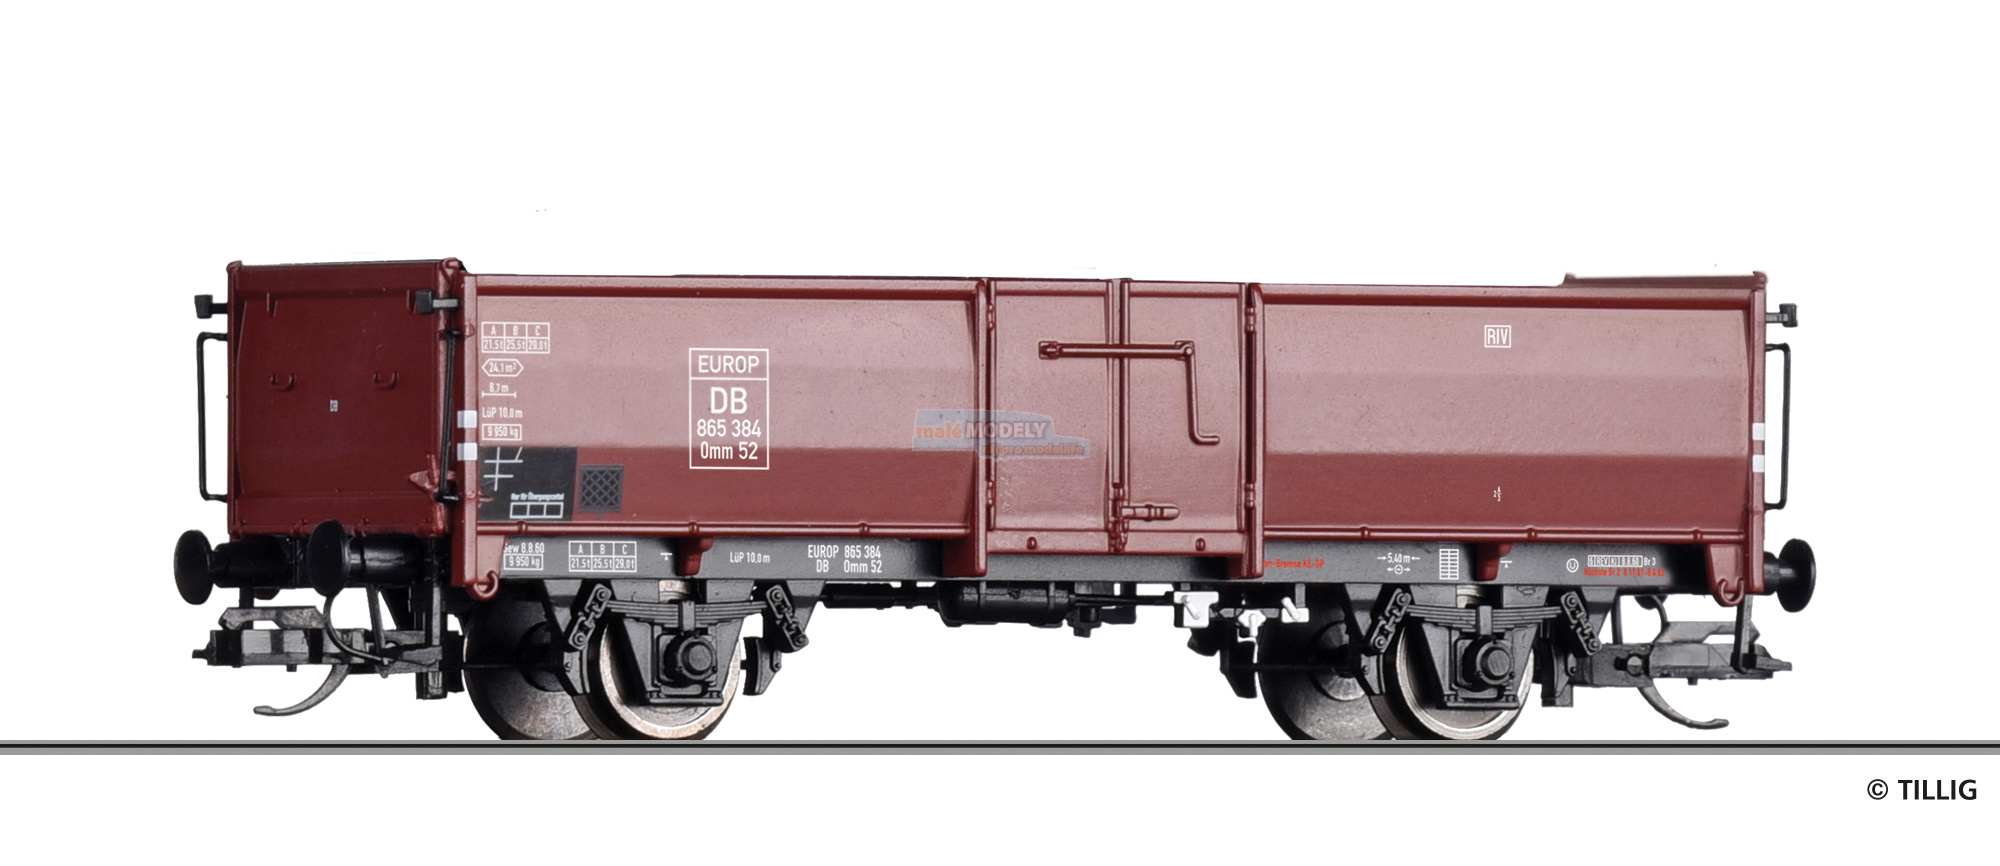 Offener Güterwagen Omm 52 der DB, Ep. III